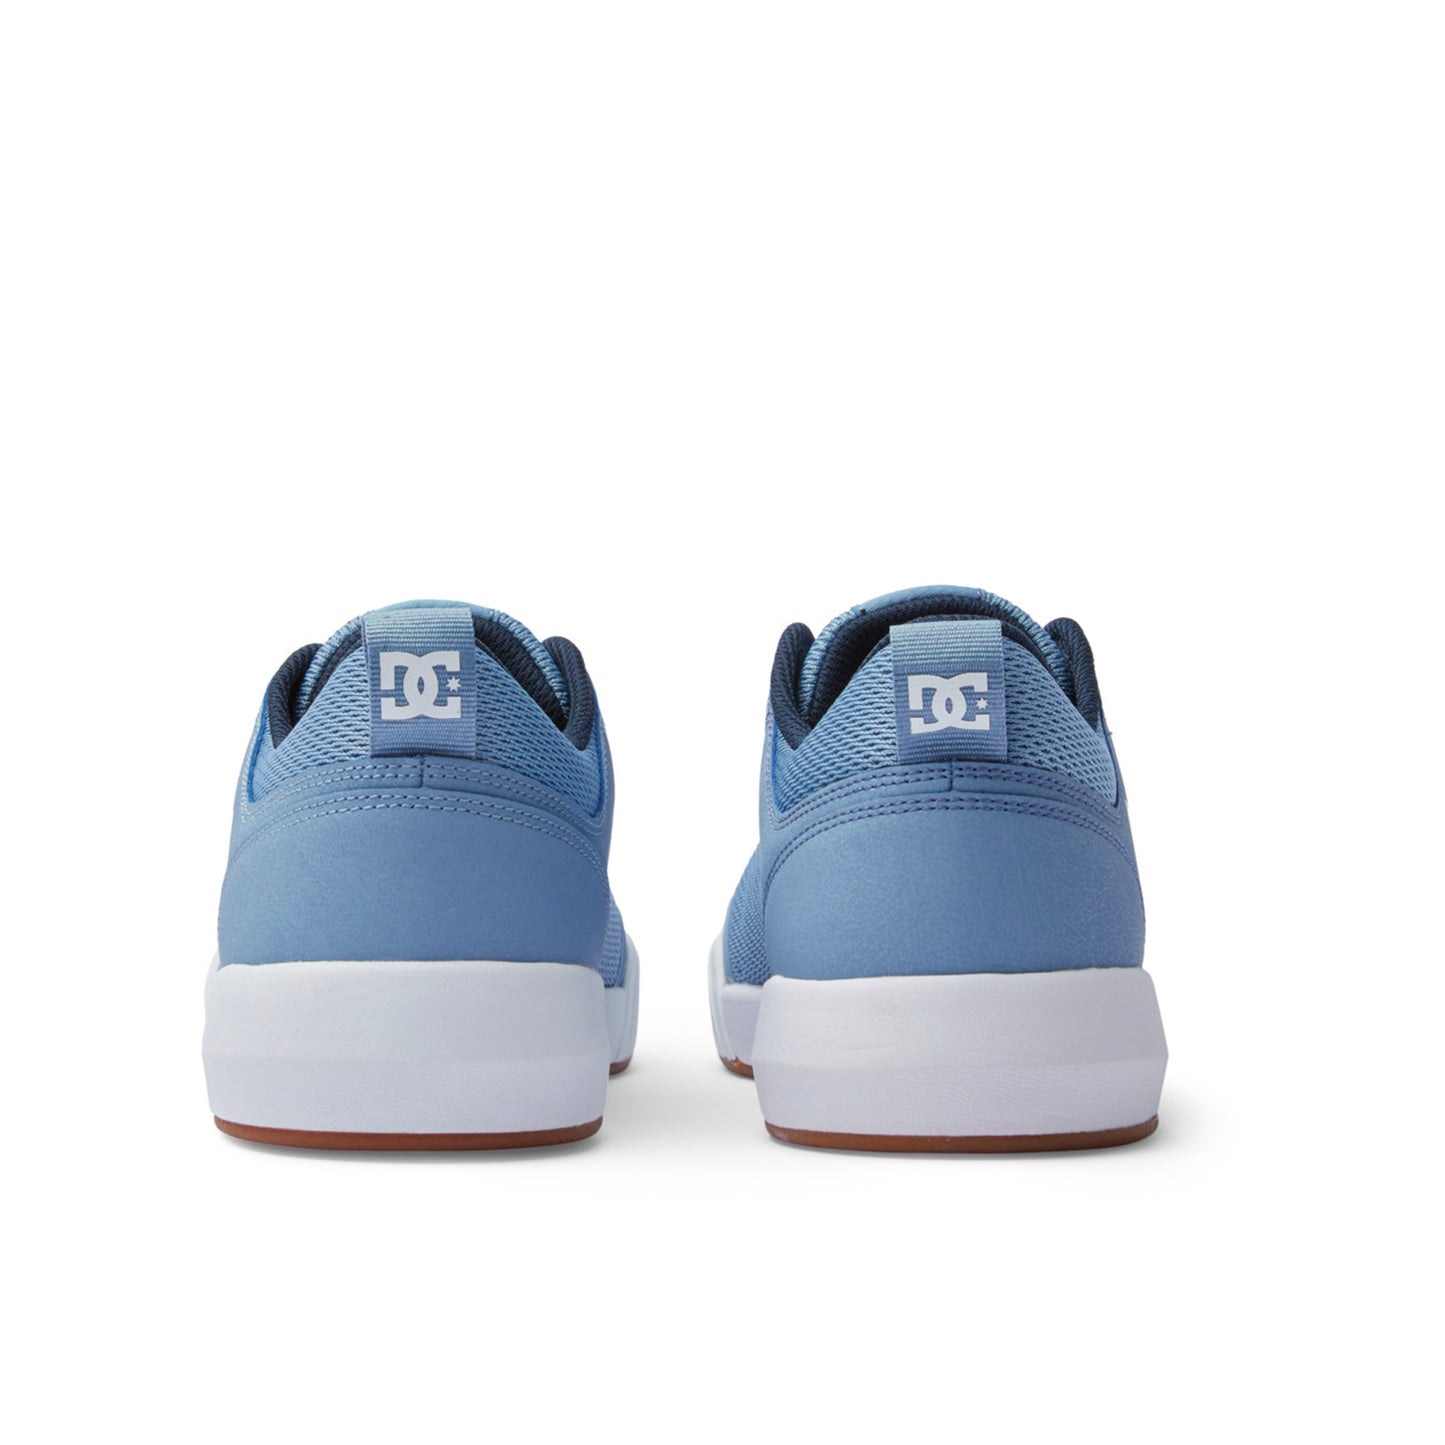 DC Transit Shoes - Light Blue - Prime Delux Store